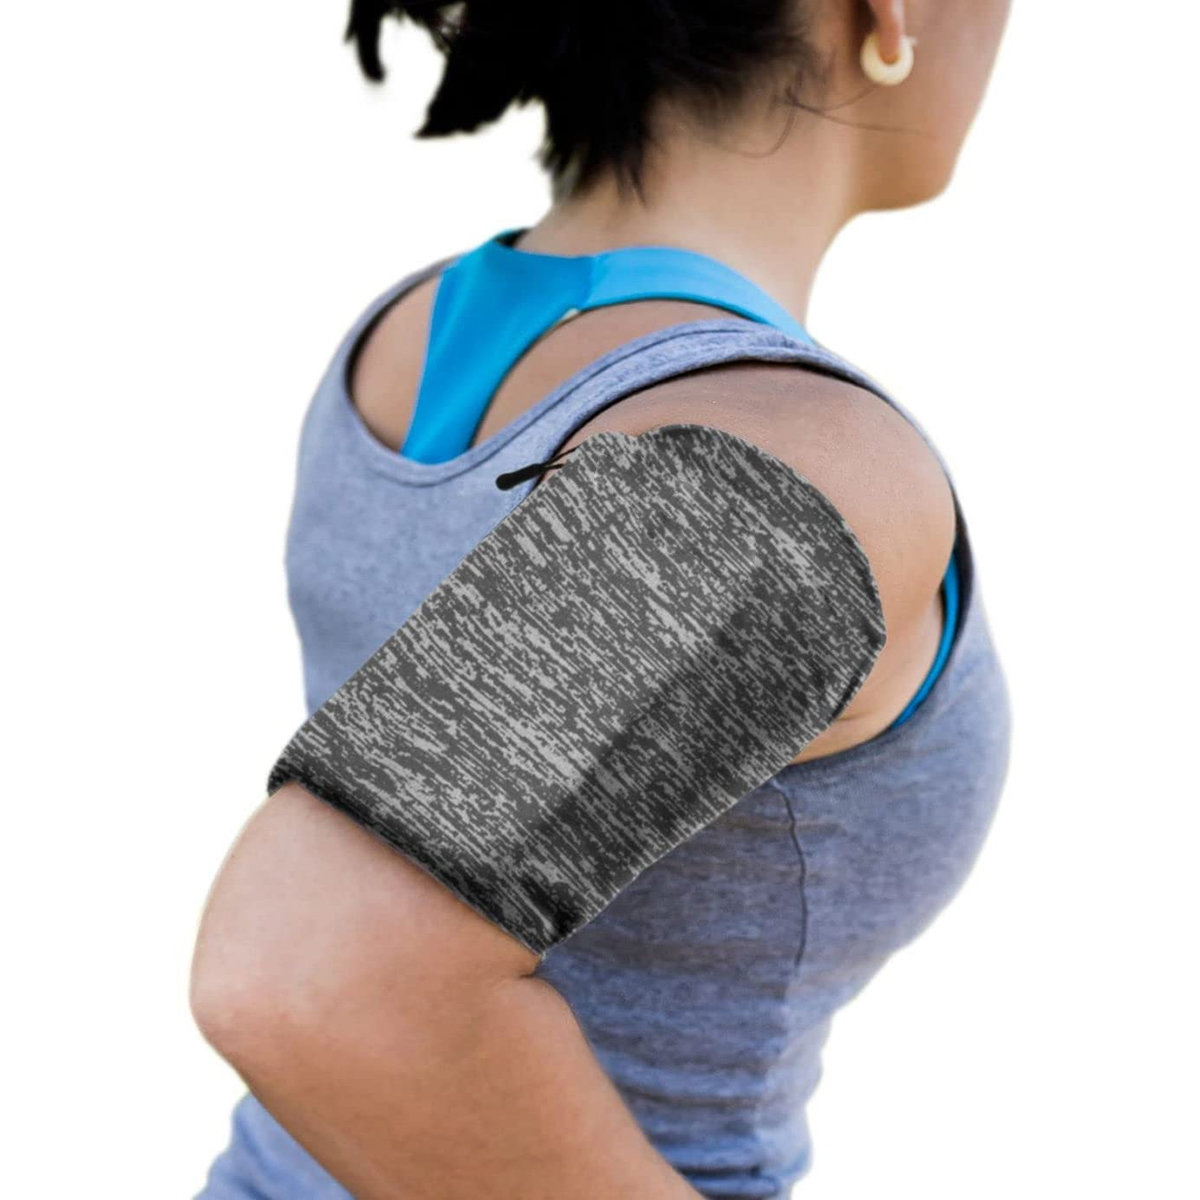 Pokrowiec Elastyczna opaska na rami do biegania Armband fitness szara LG X screen